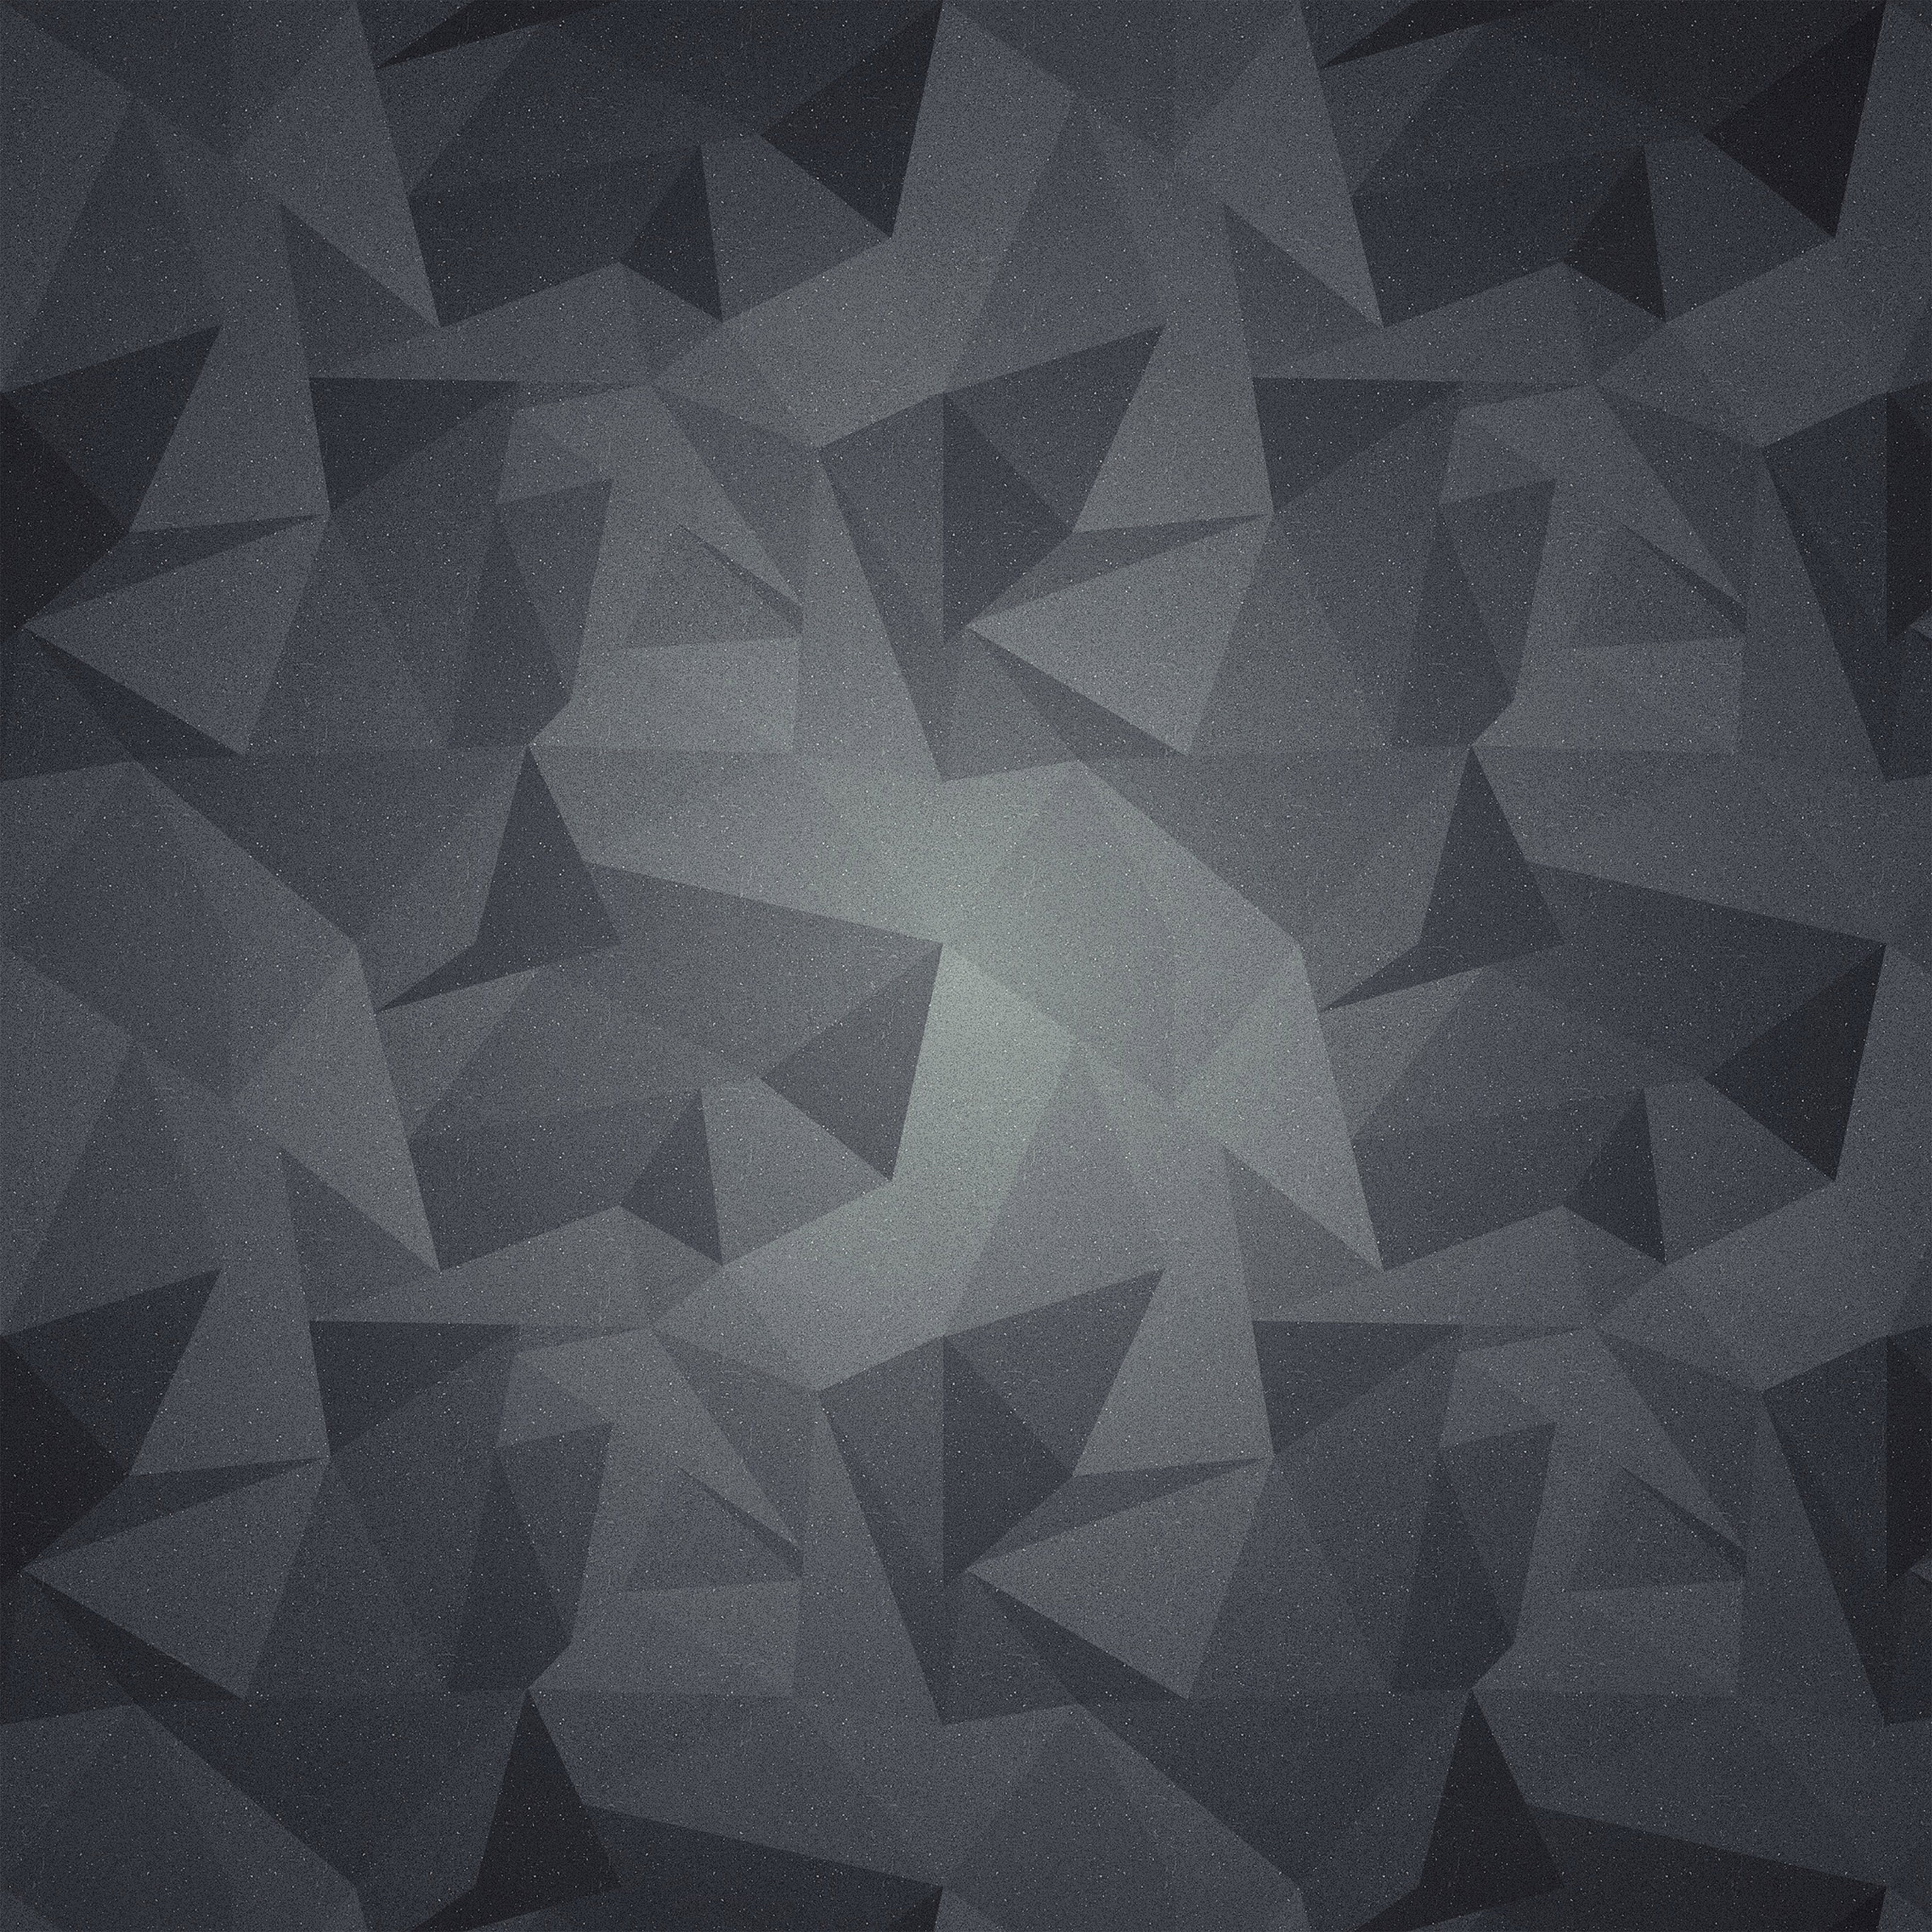 geometrische mustertapete,schwarz,muster,dreieck,einfarbig,schwarz und weiß